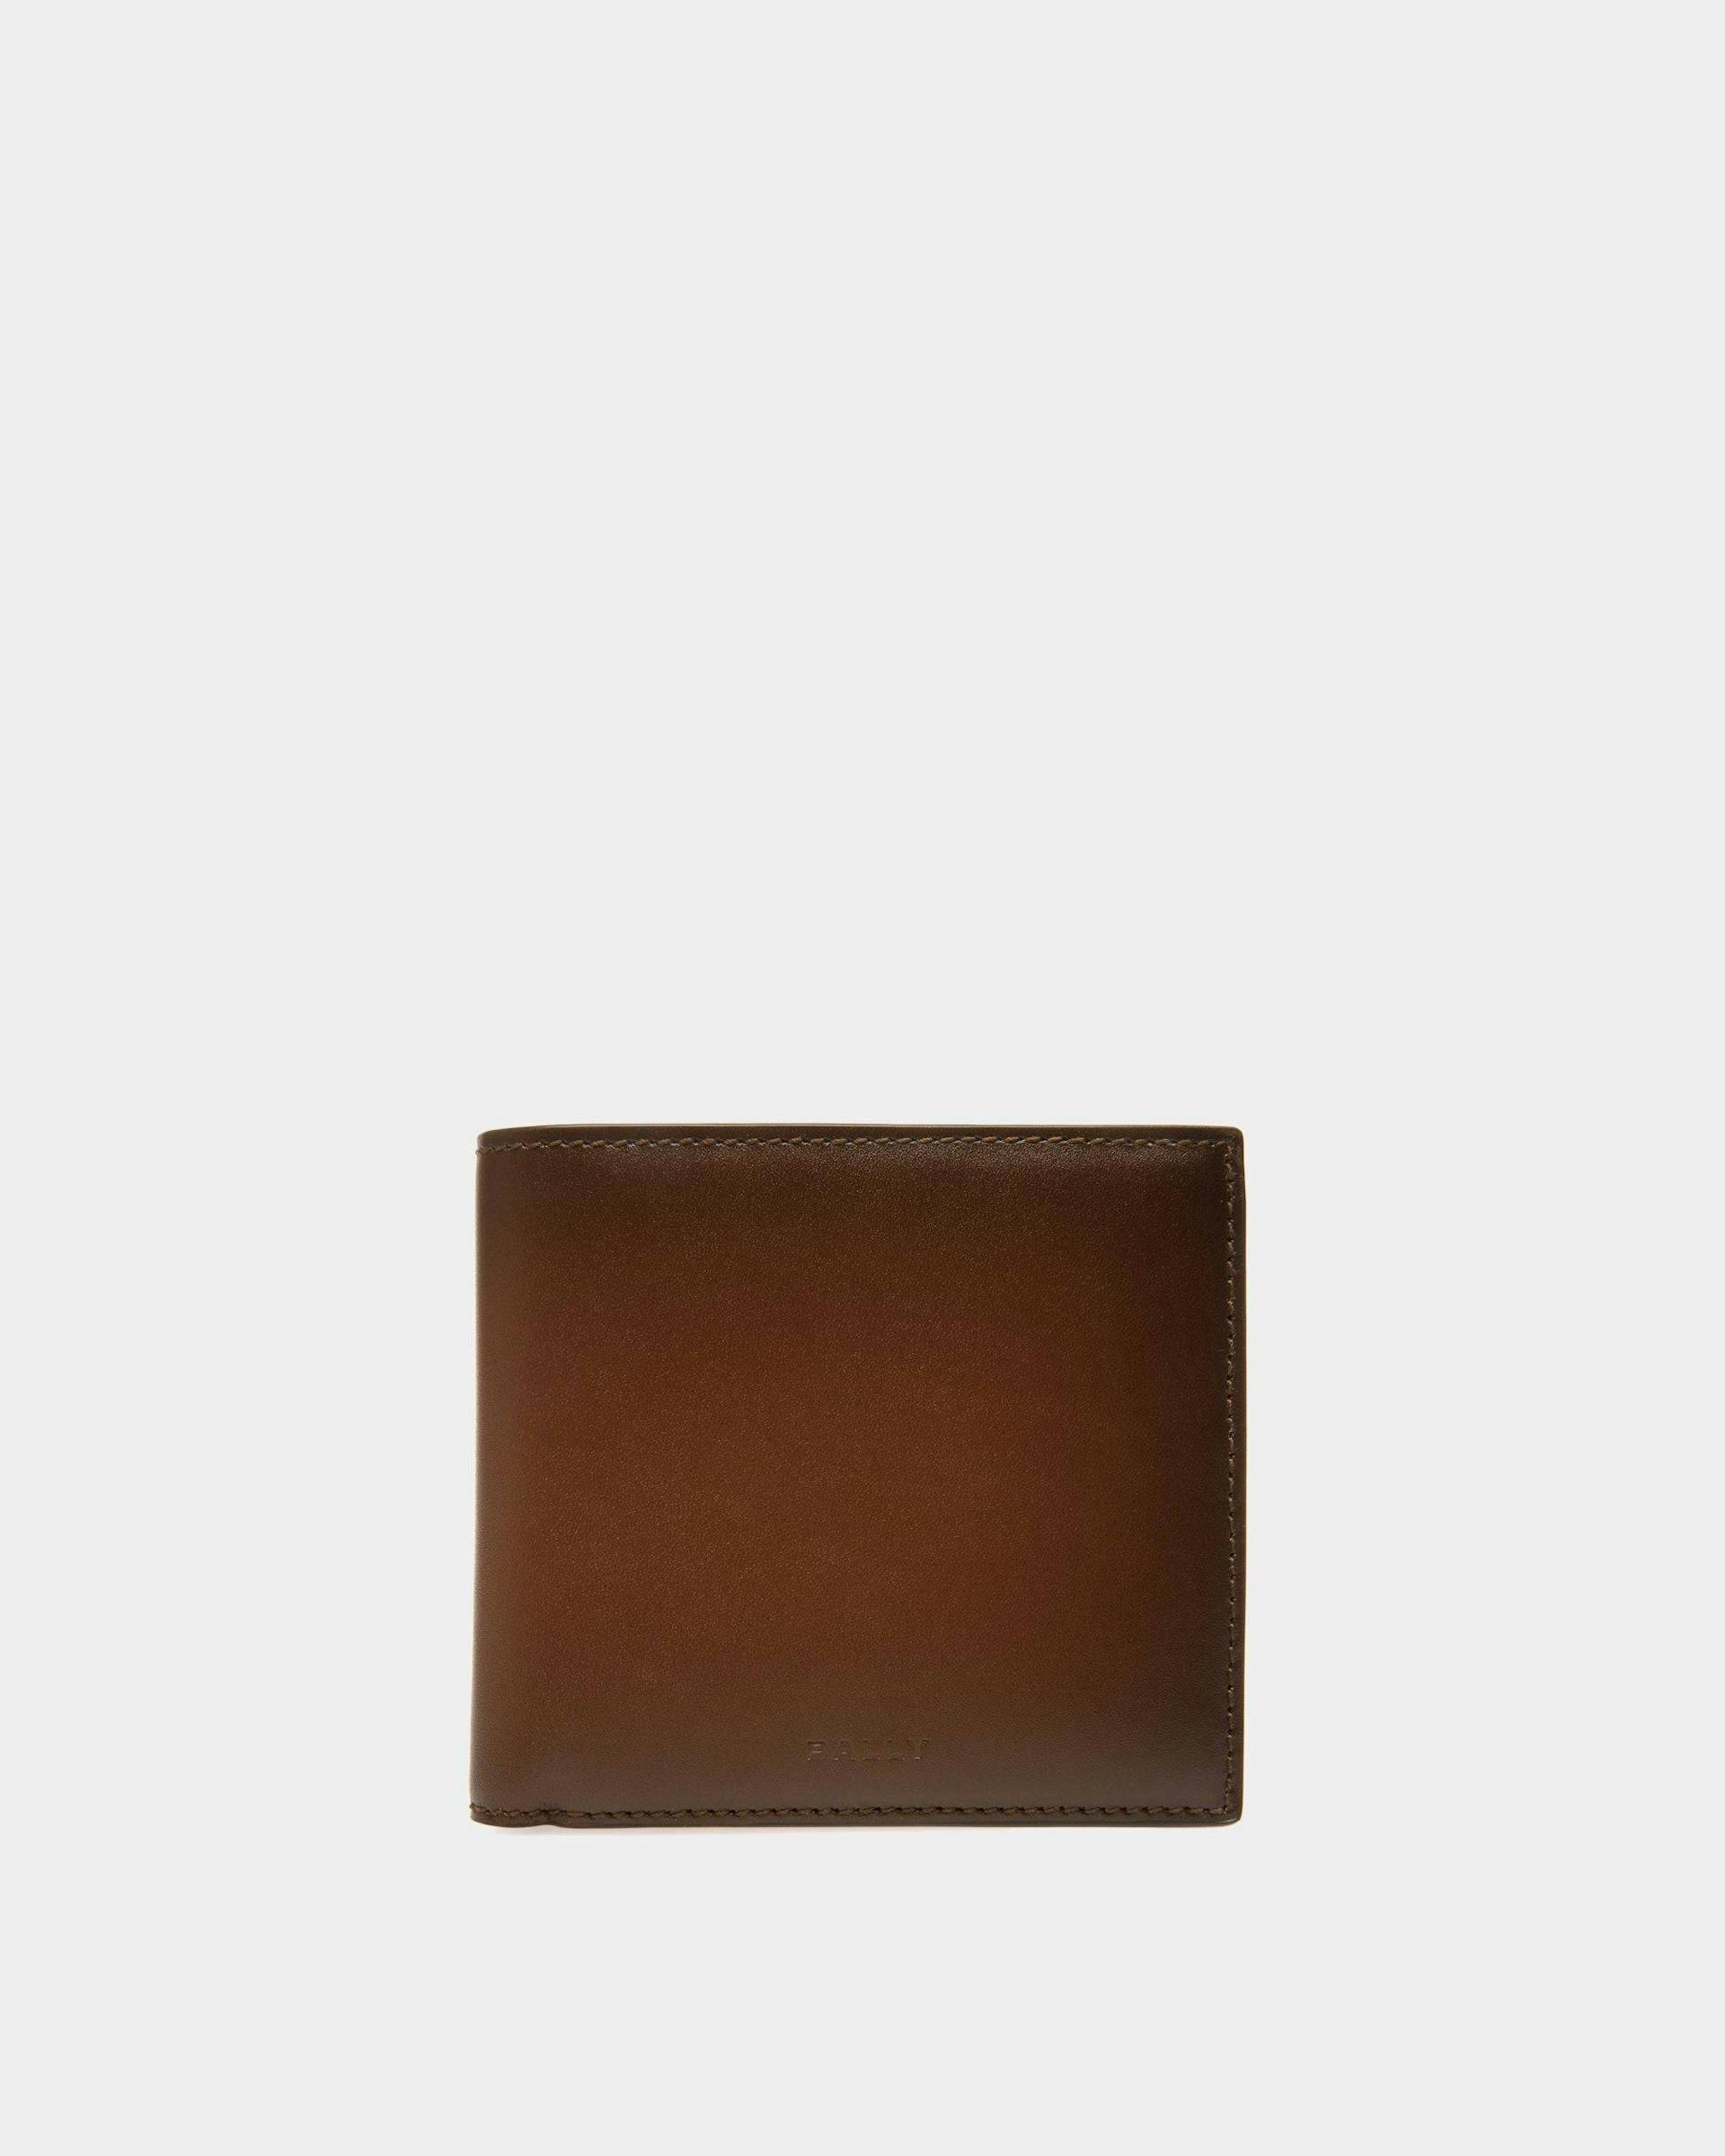 Speciale Bi-fold Wallet In Brown Leather - Men's - Bally - 01